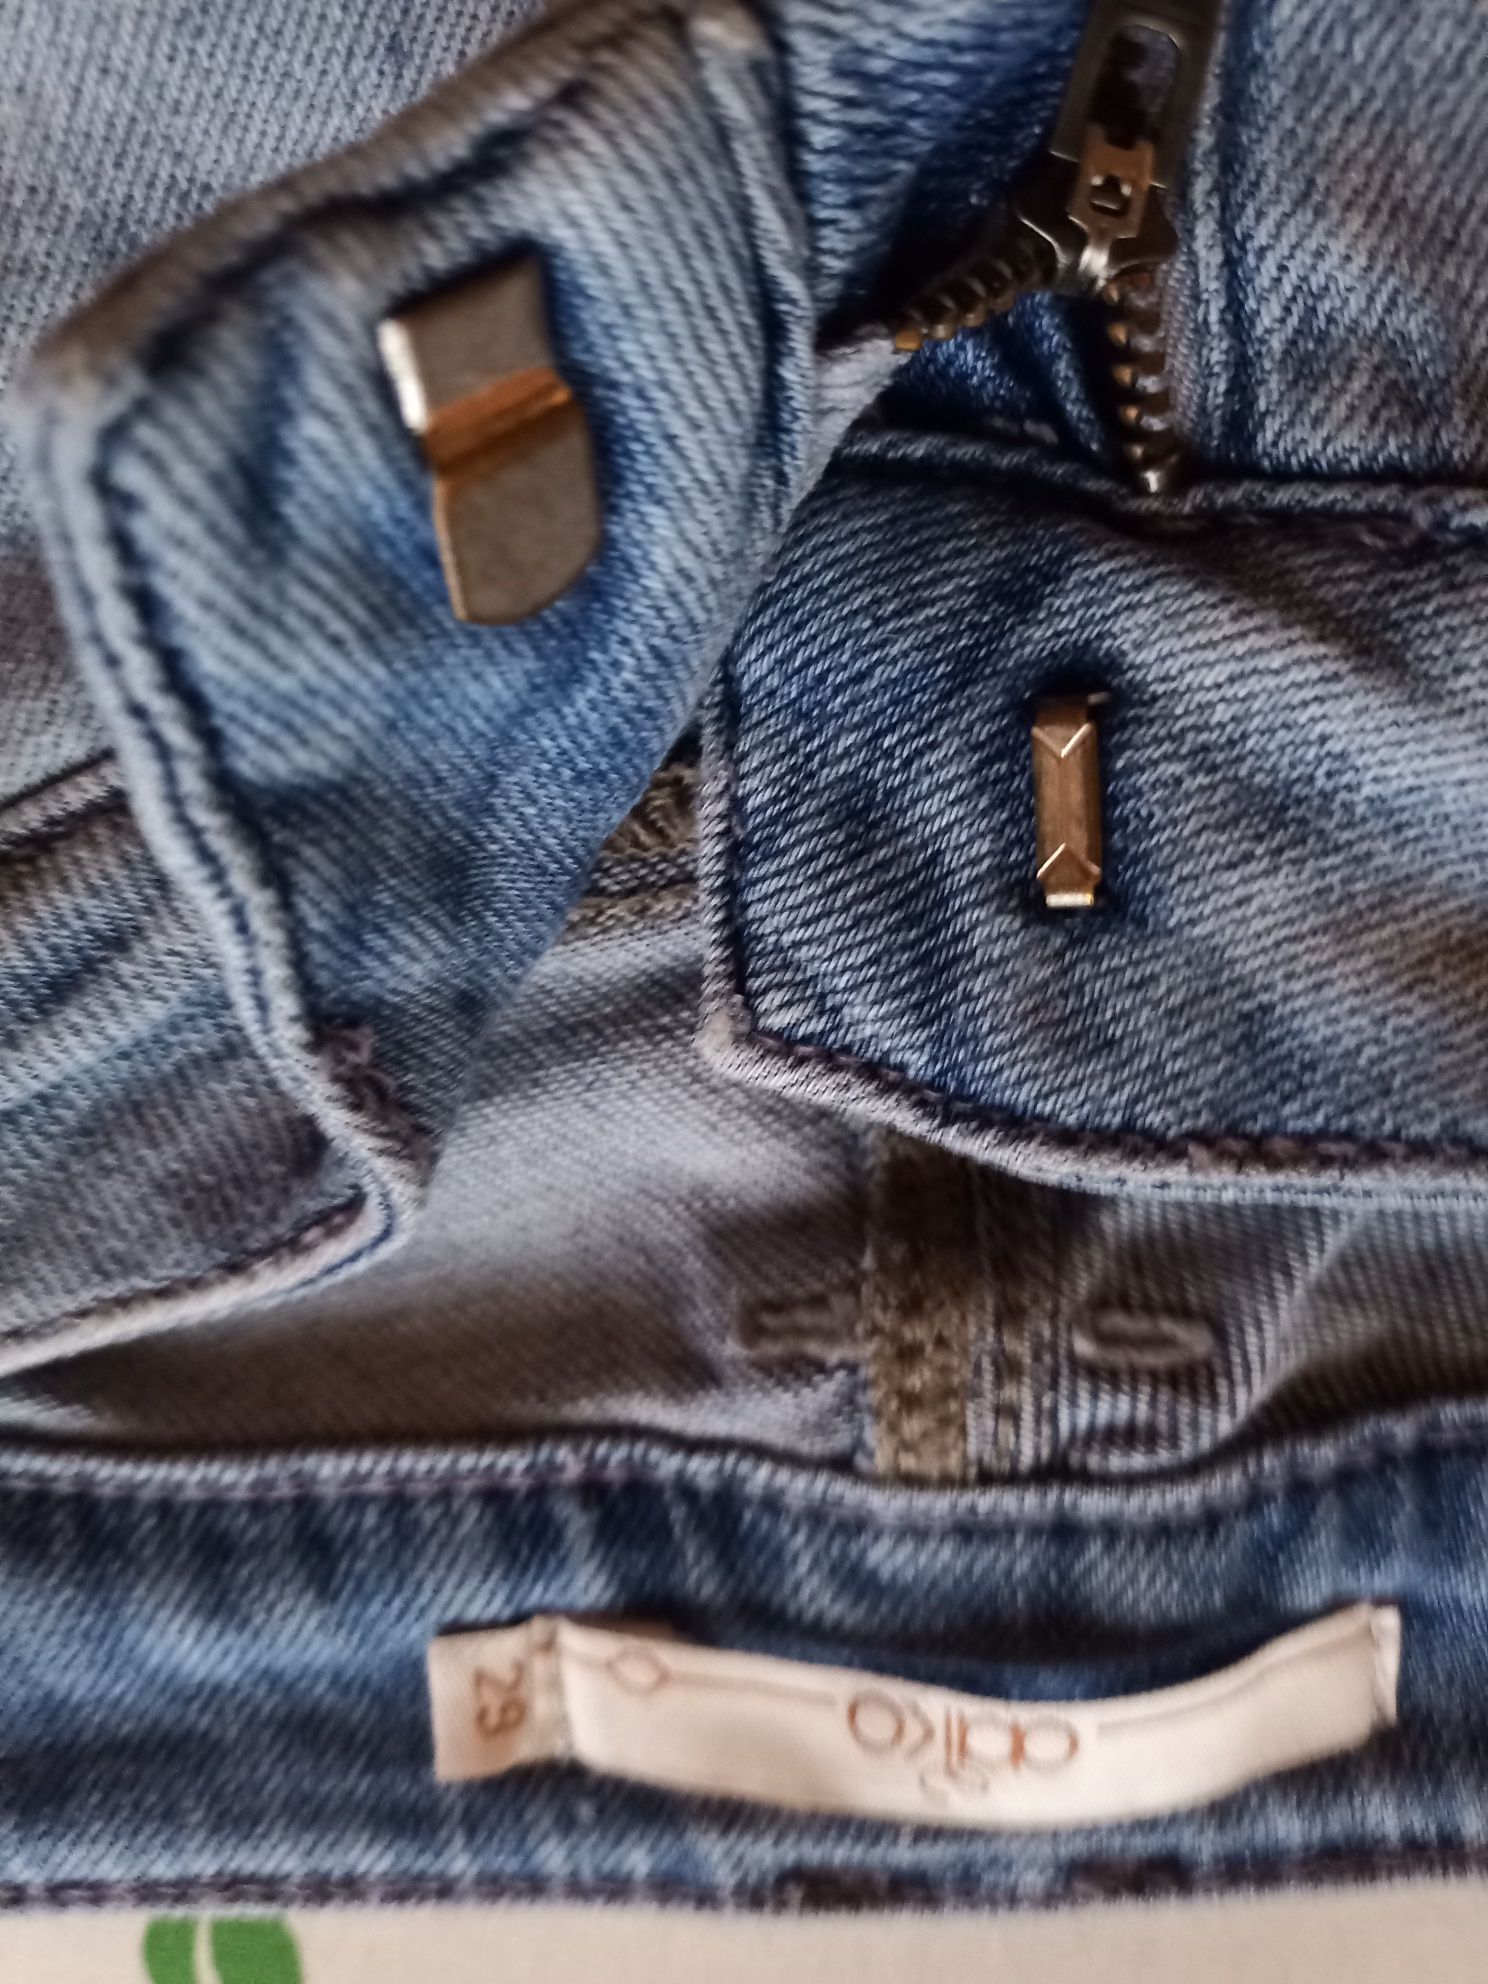 Damskie dżinsy jeansy dopasowane 29 aako